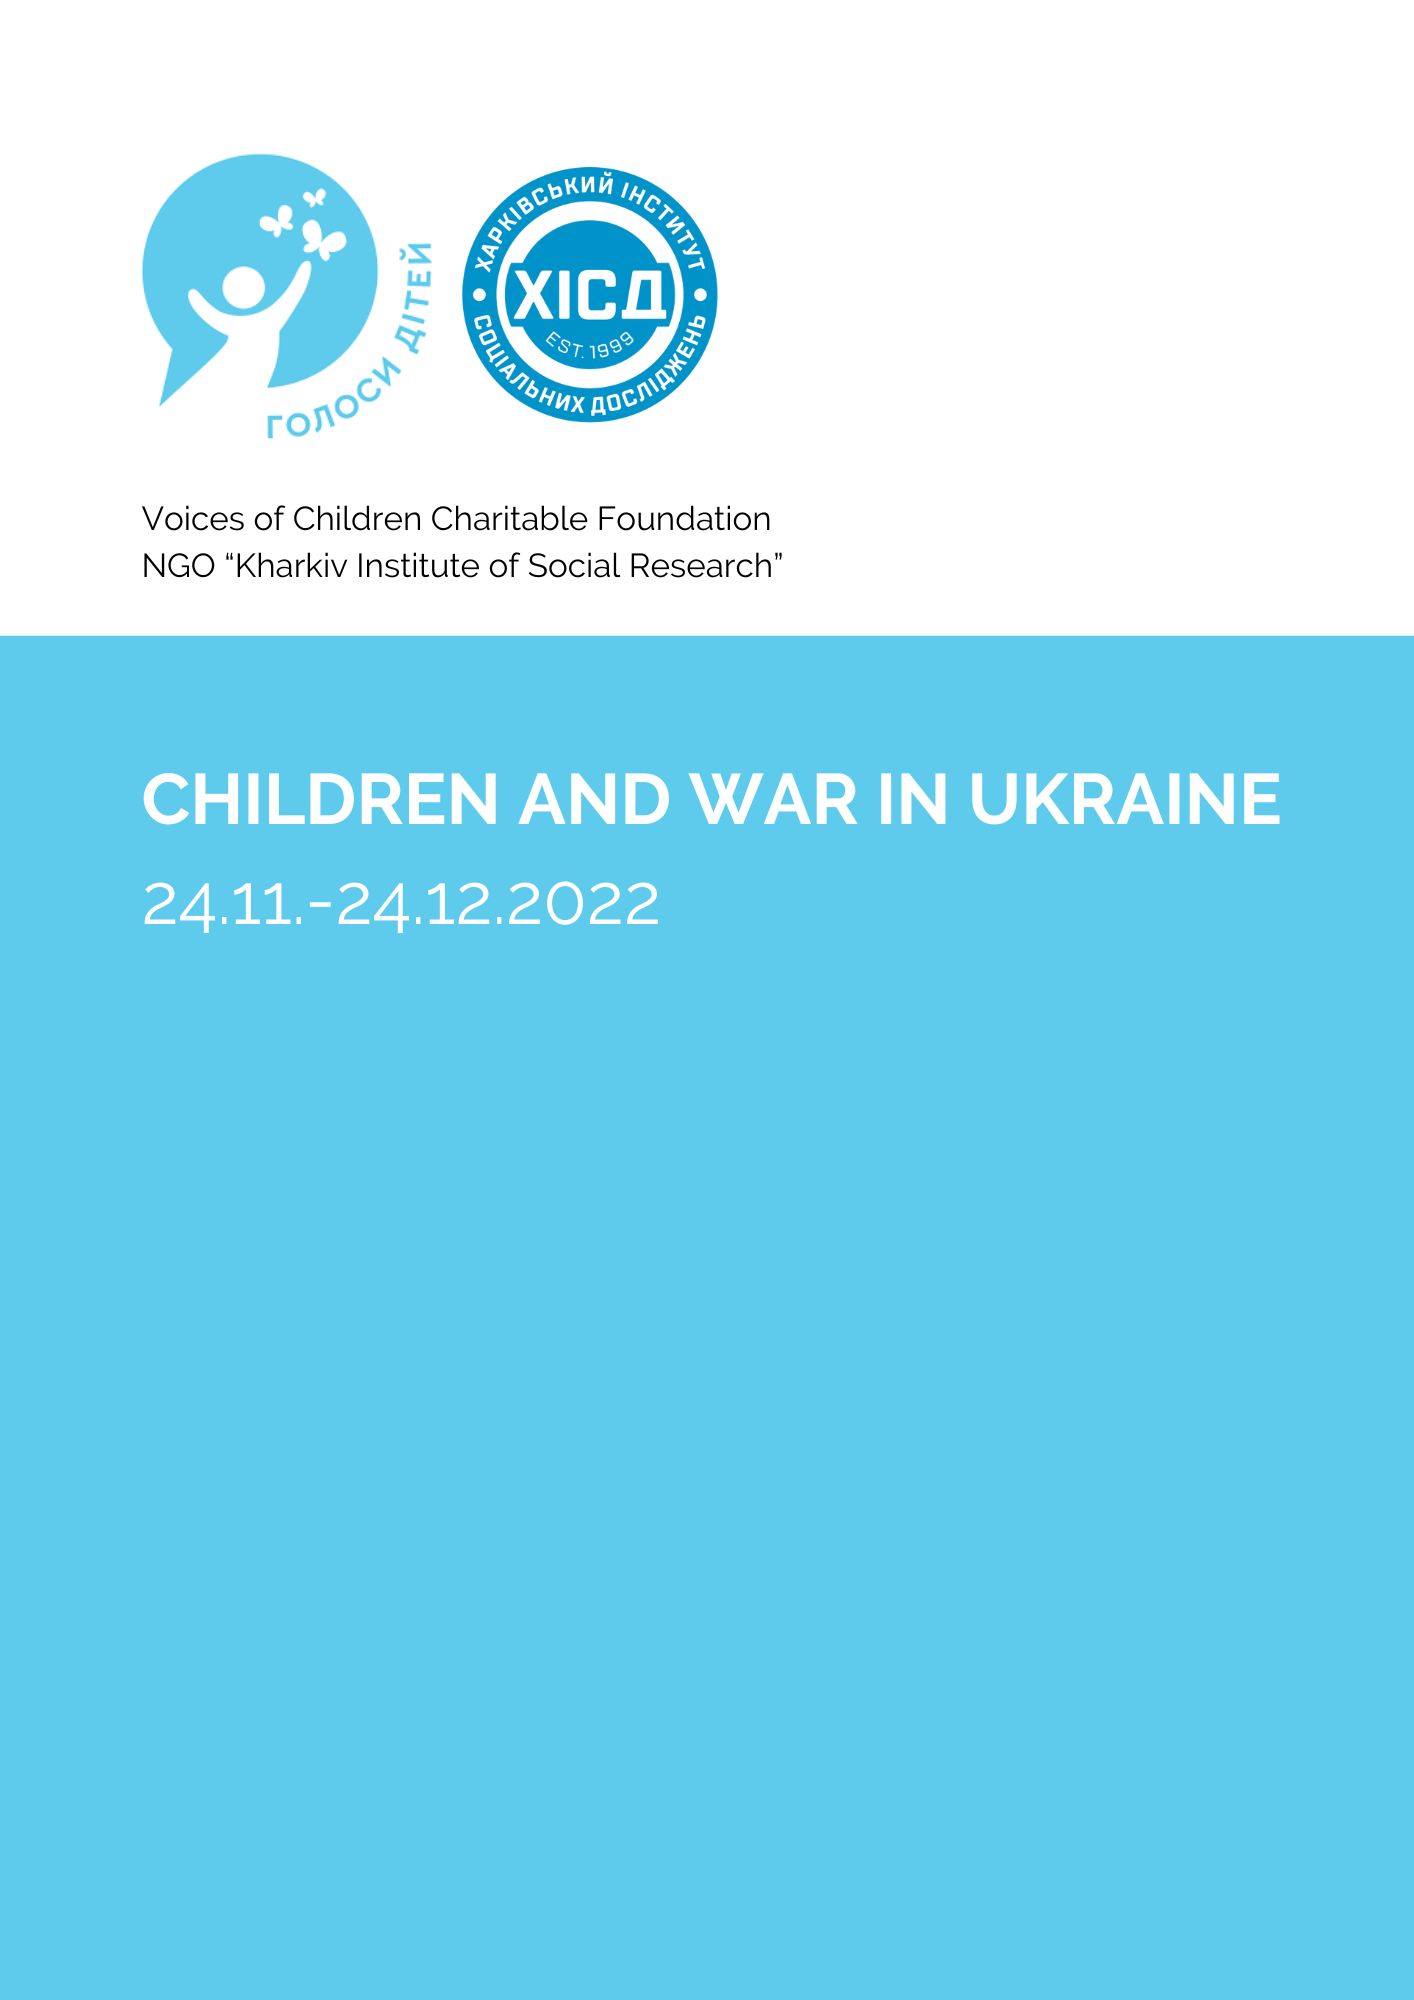 Children and the war in Ukraine 24.11.-24.12.2022